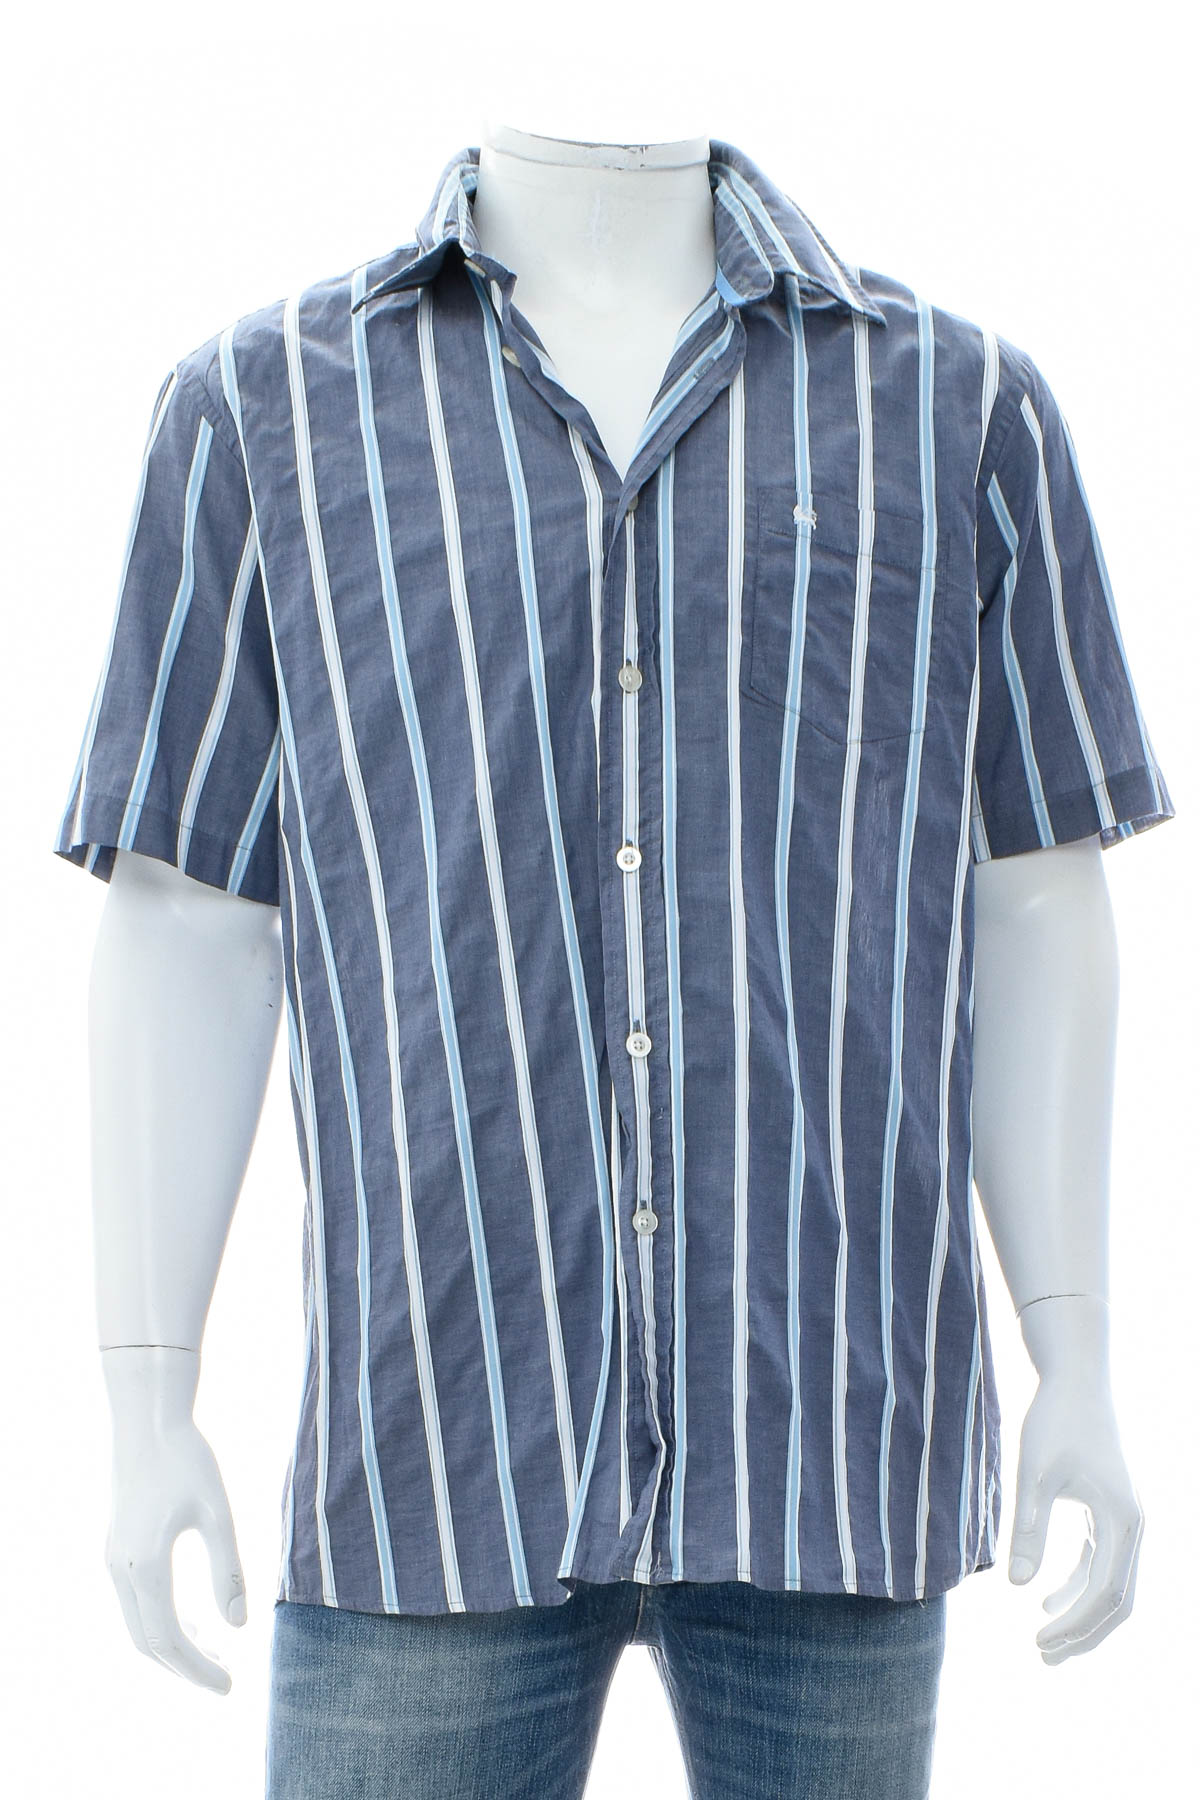 Ανδρικό πουκάμισο - Lerros - 0